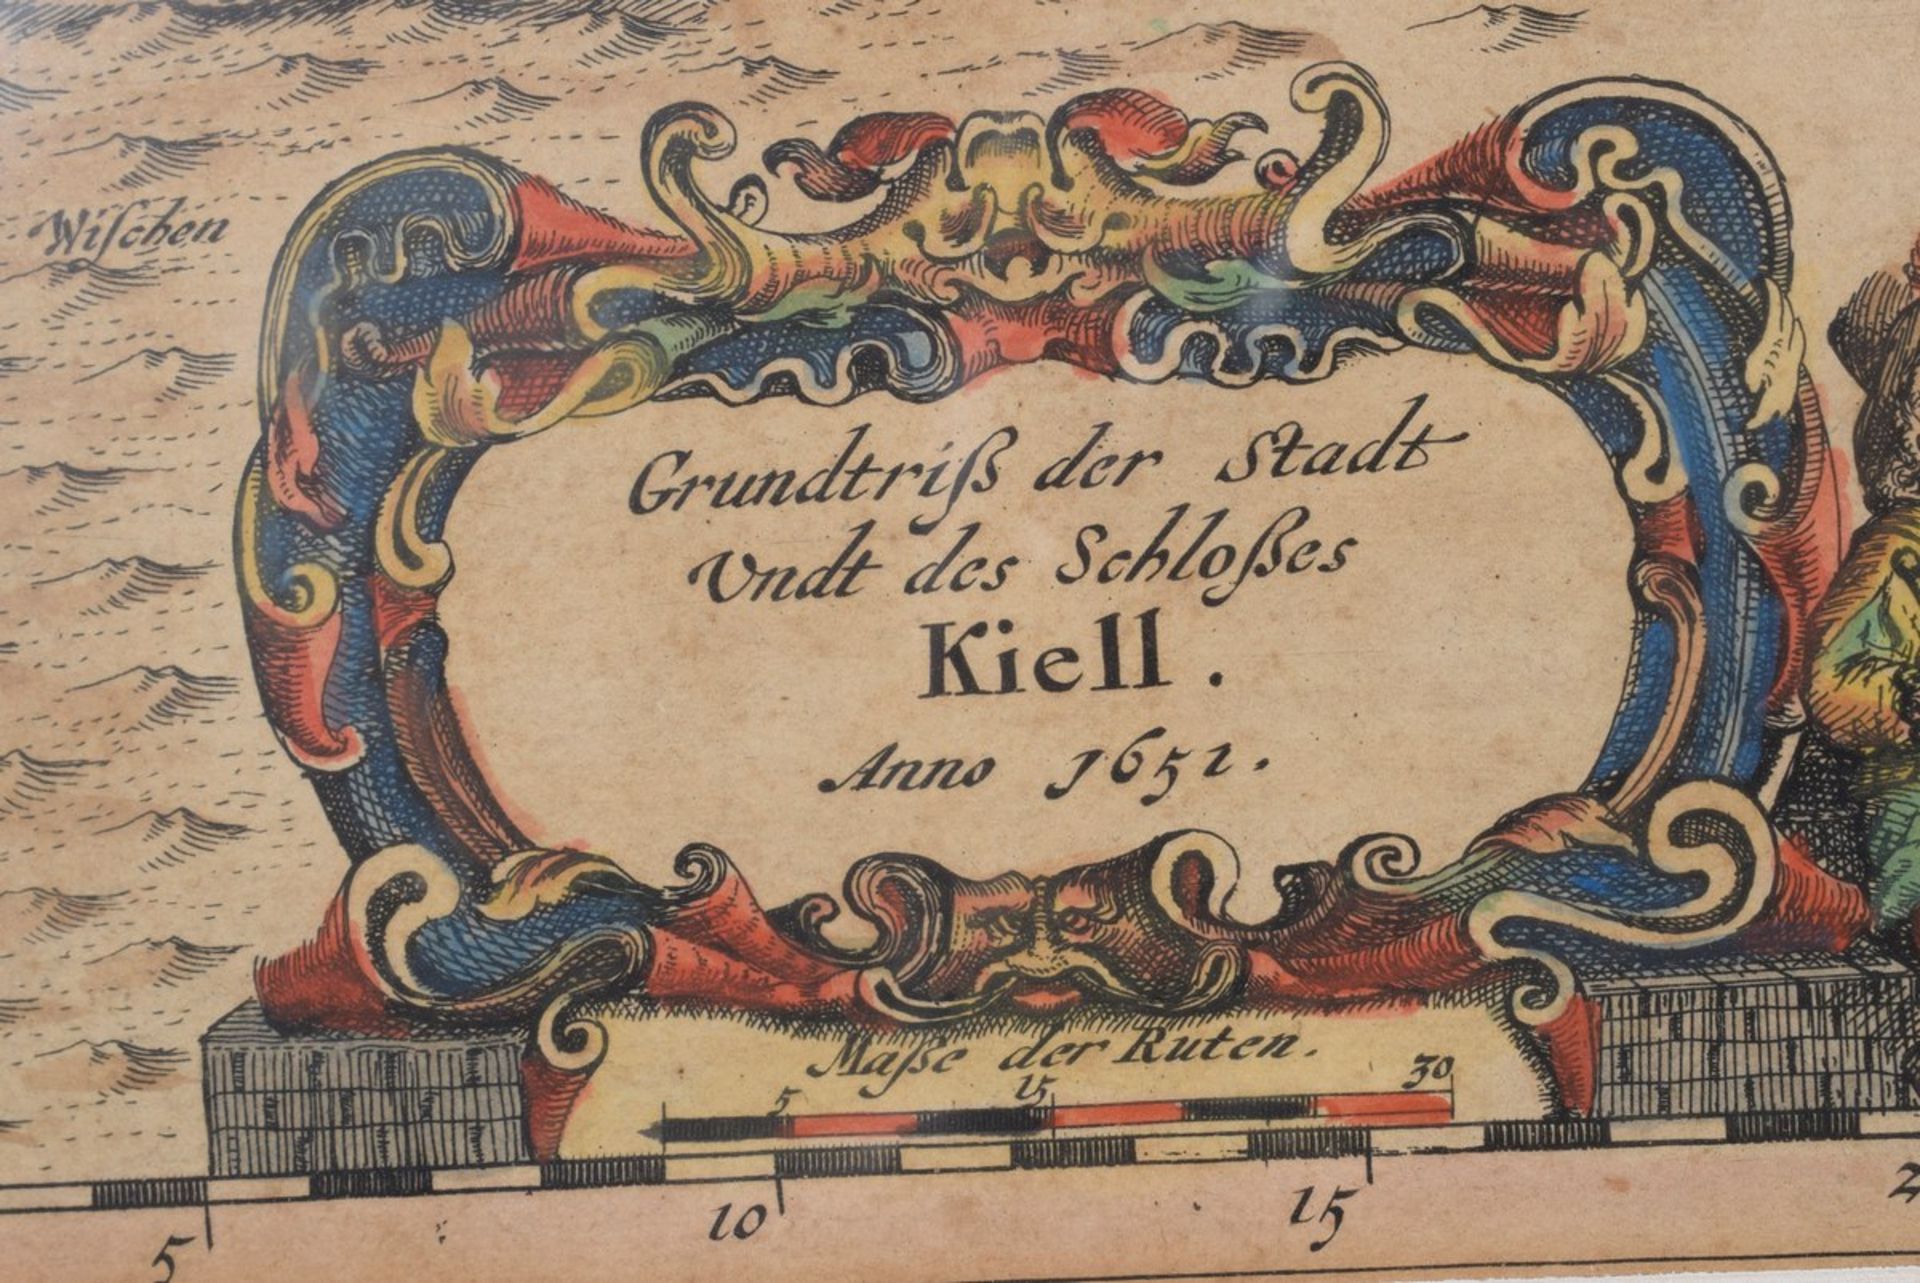 Mejer, Johannes (1606-1674) "Grundtriß der Stadt Undt des Schloßes Kiell", 1652, colorierter - Bild 3 aus 3